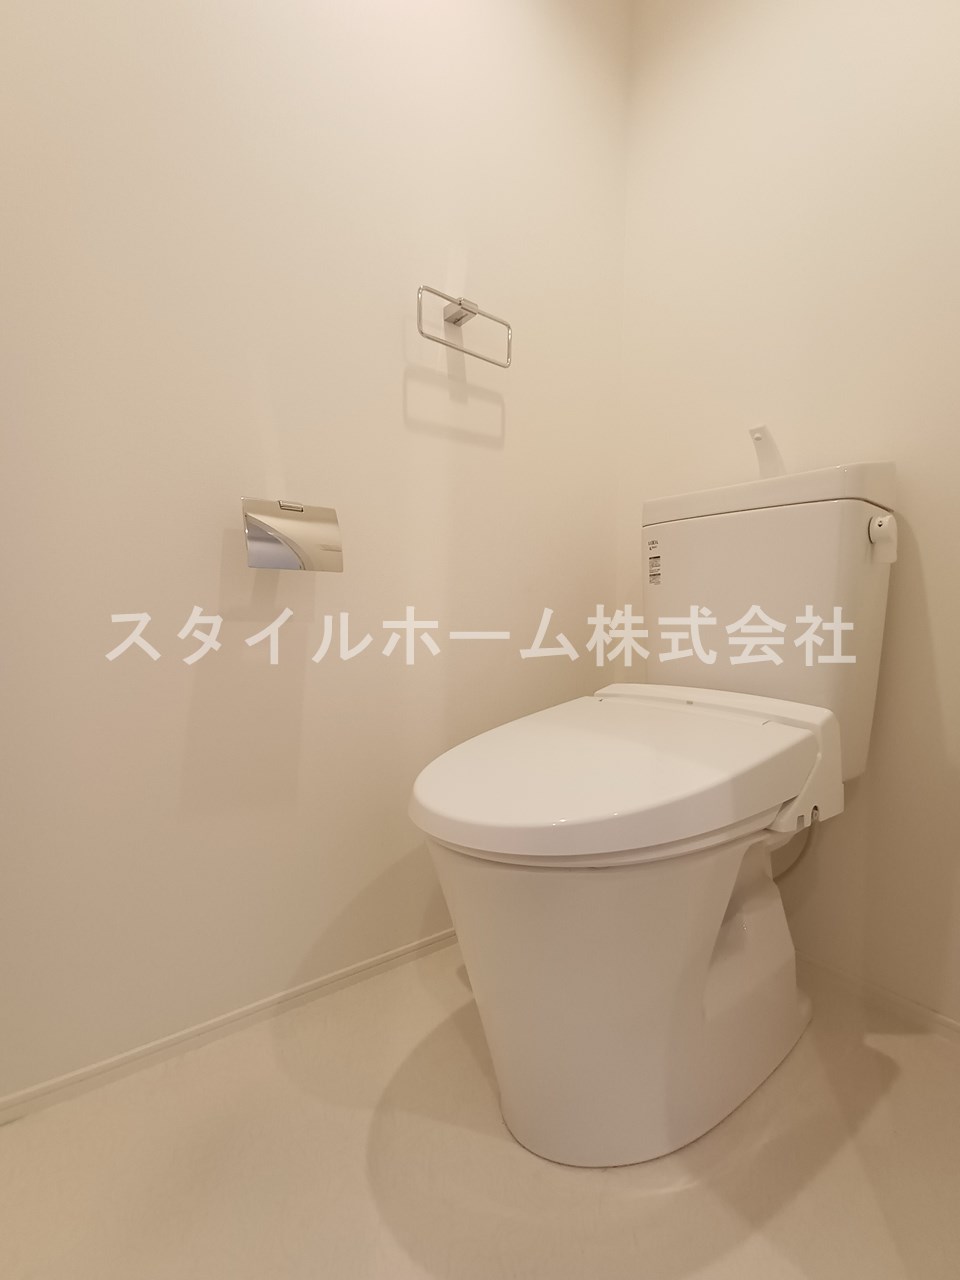 【エル山之手のトイレ】